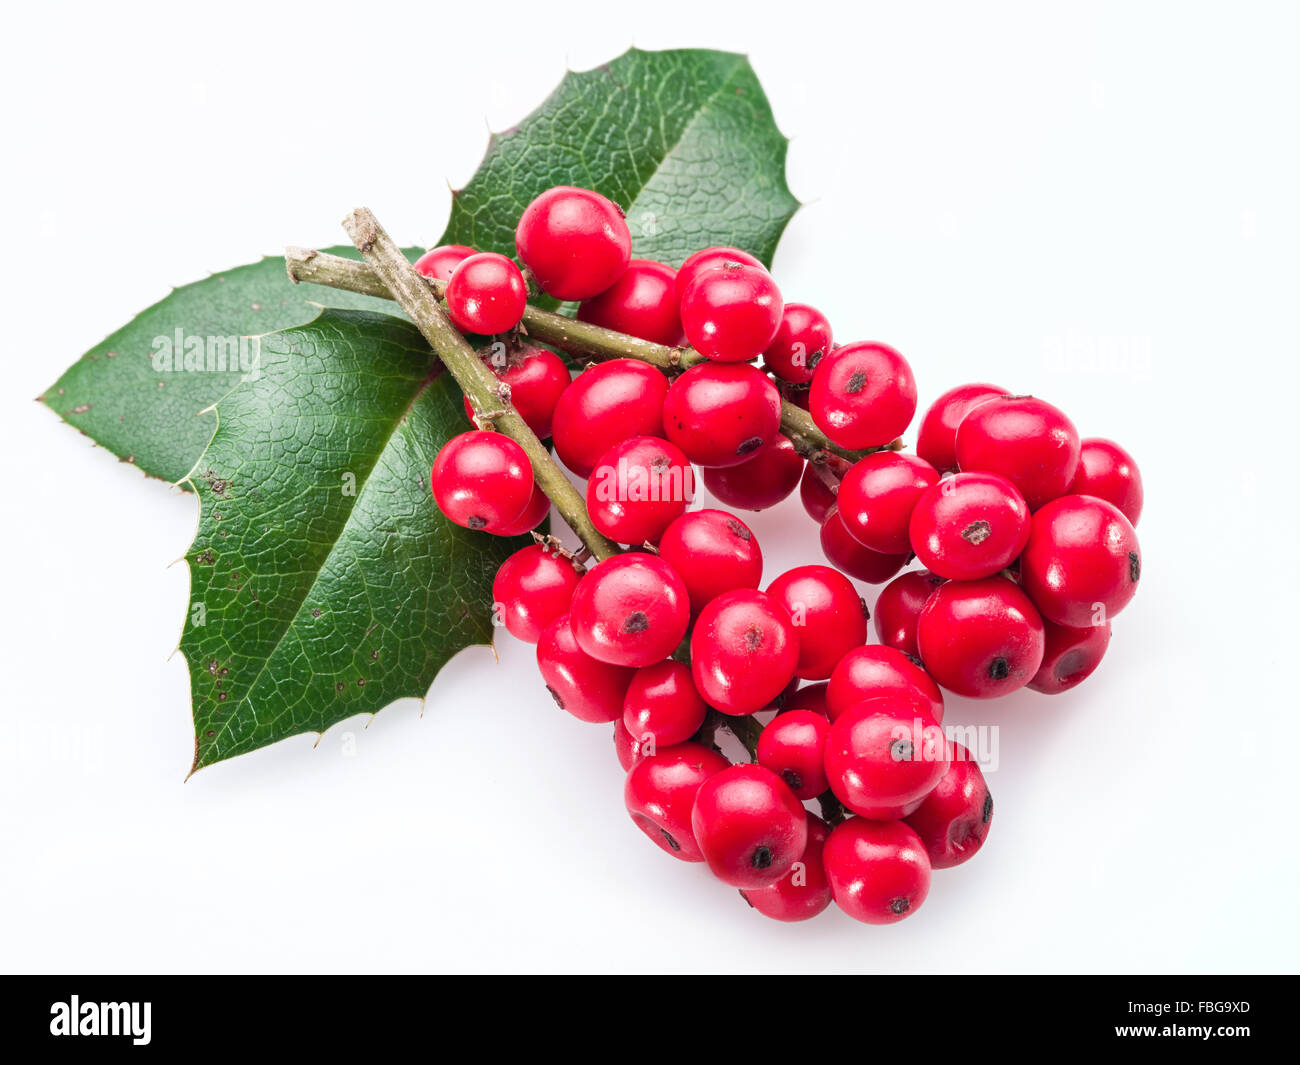 Stechpalme (Ilex) Blätter und Früchte auf einem weißen Hintergrund. Stockfoto